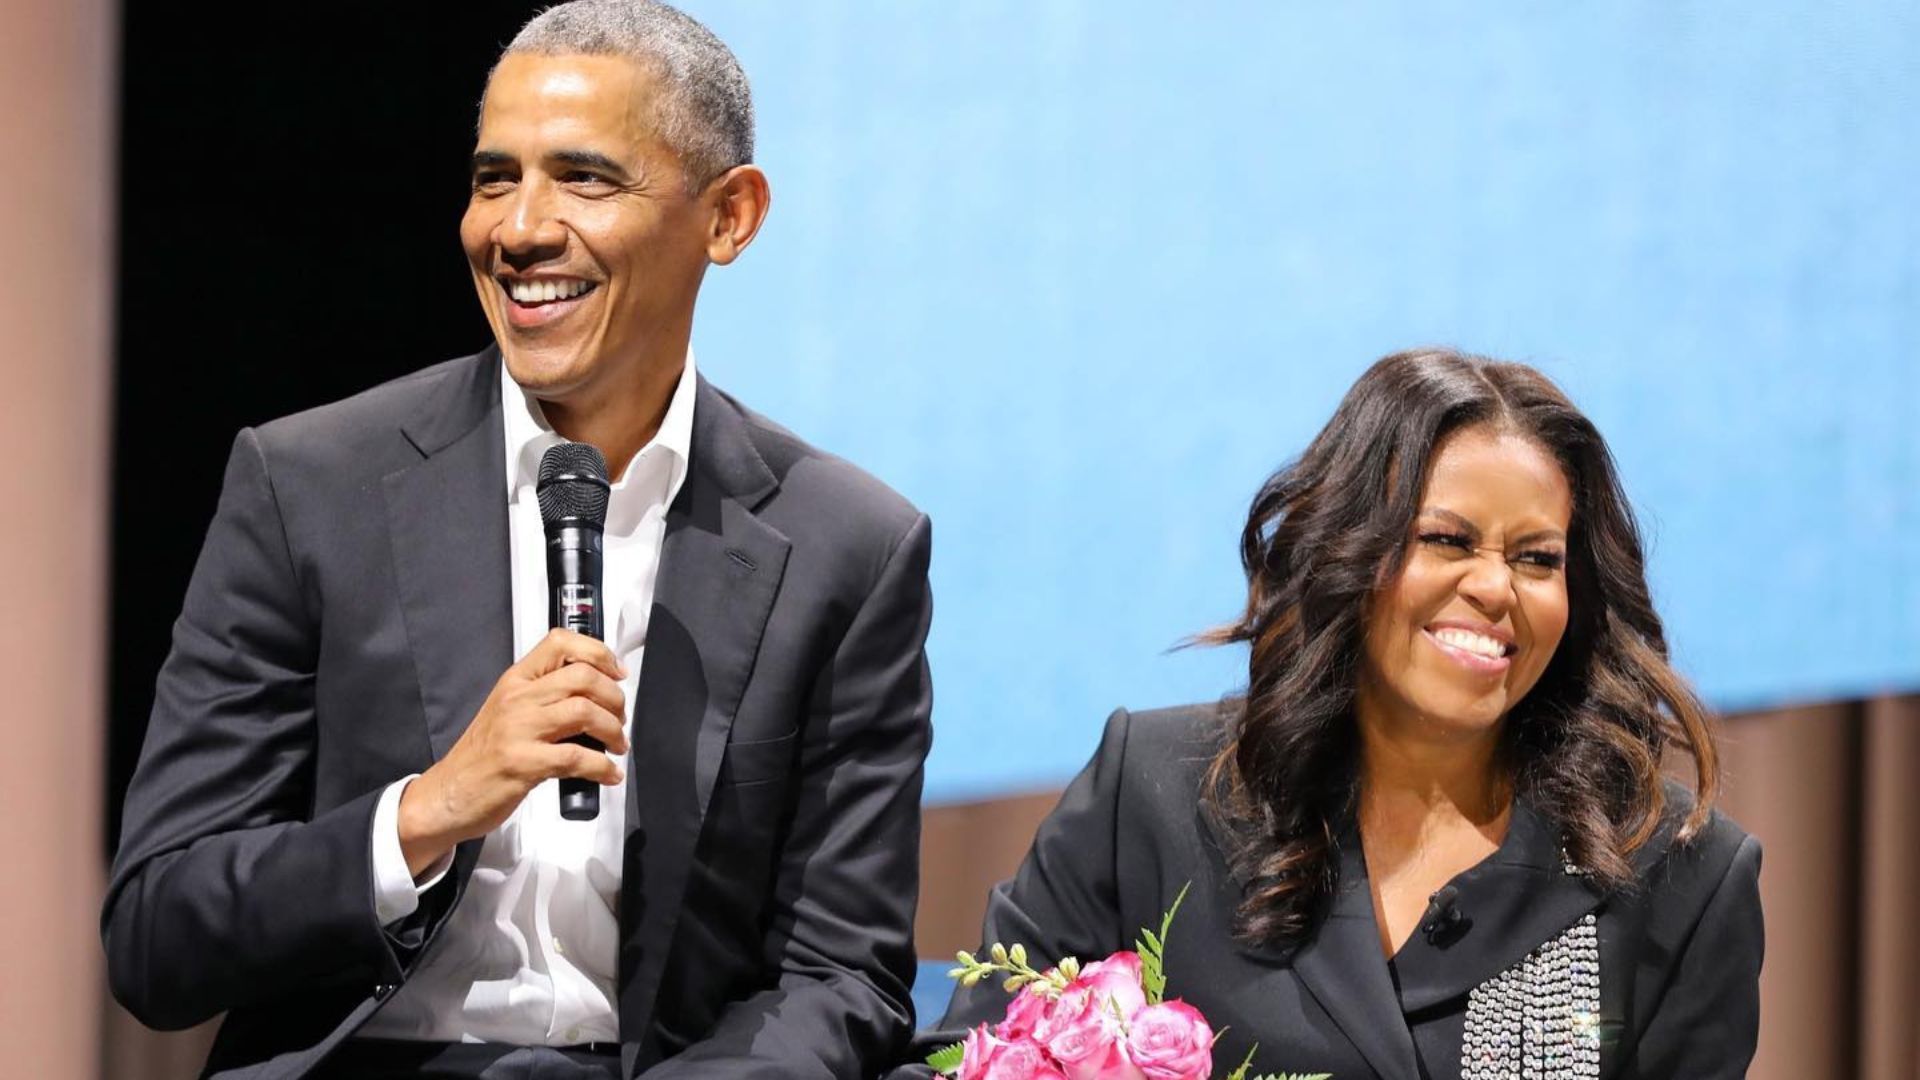 Best dressed world leaders : Barack Obama Michelle Obama